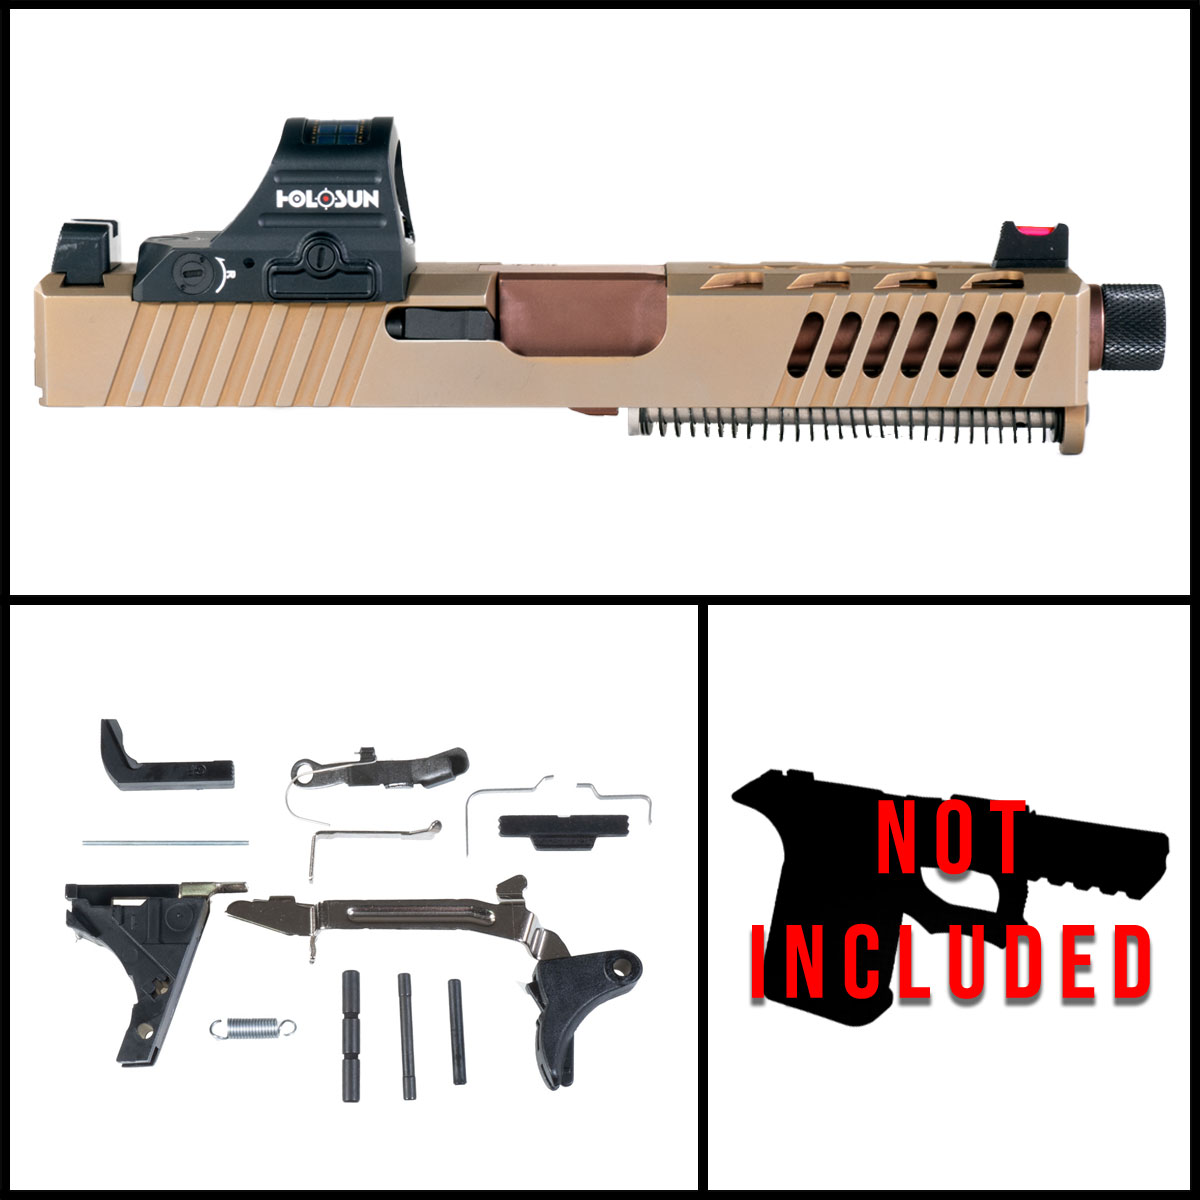 DTT 'Cyprus' 9mm Full Pistol Build Kit (Everything Minus Frame) - Glock 19 Compatible